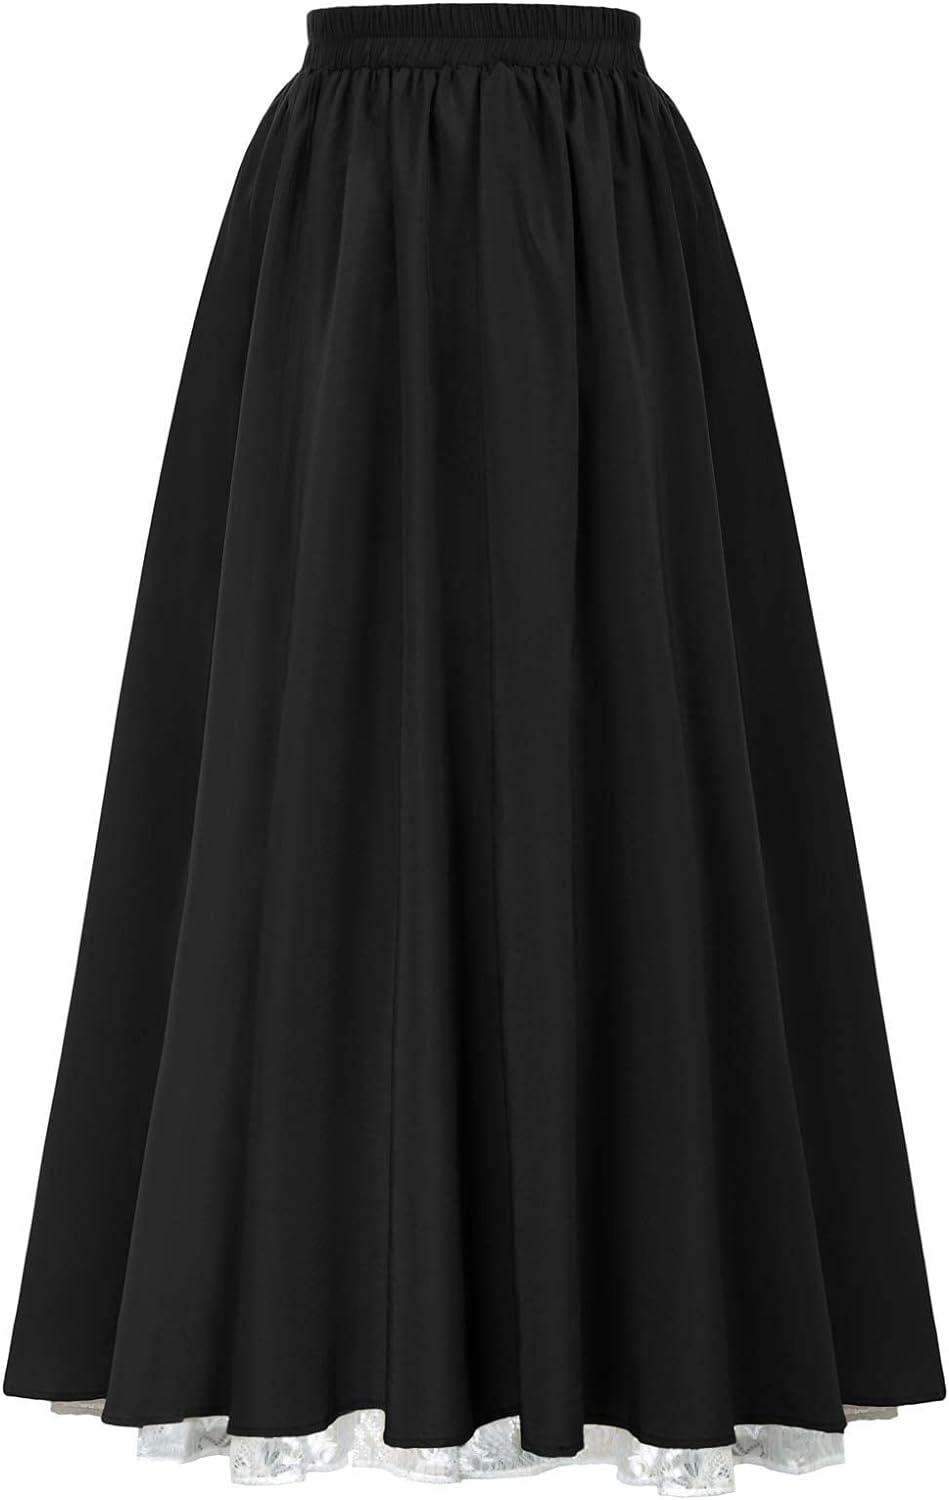 Scarlet Darkness Maxi Long Skirt: A Renaissance Skirt Review